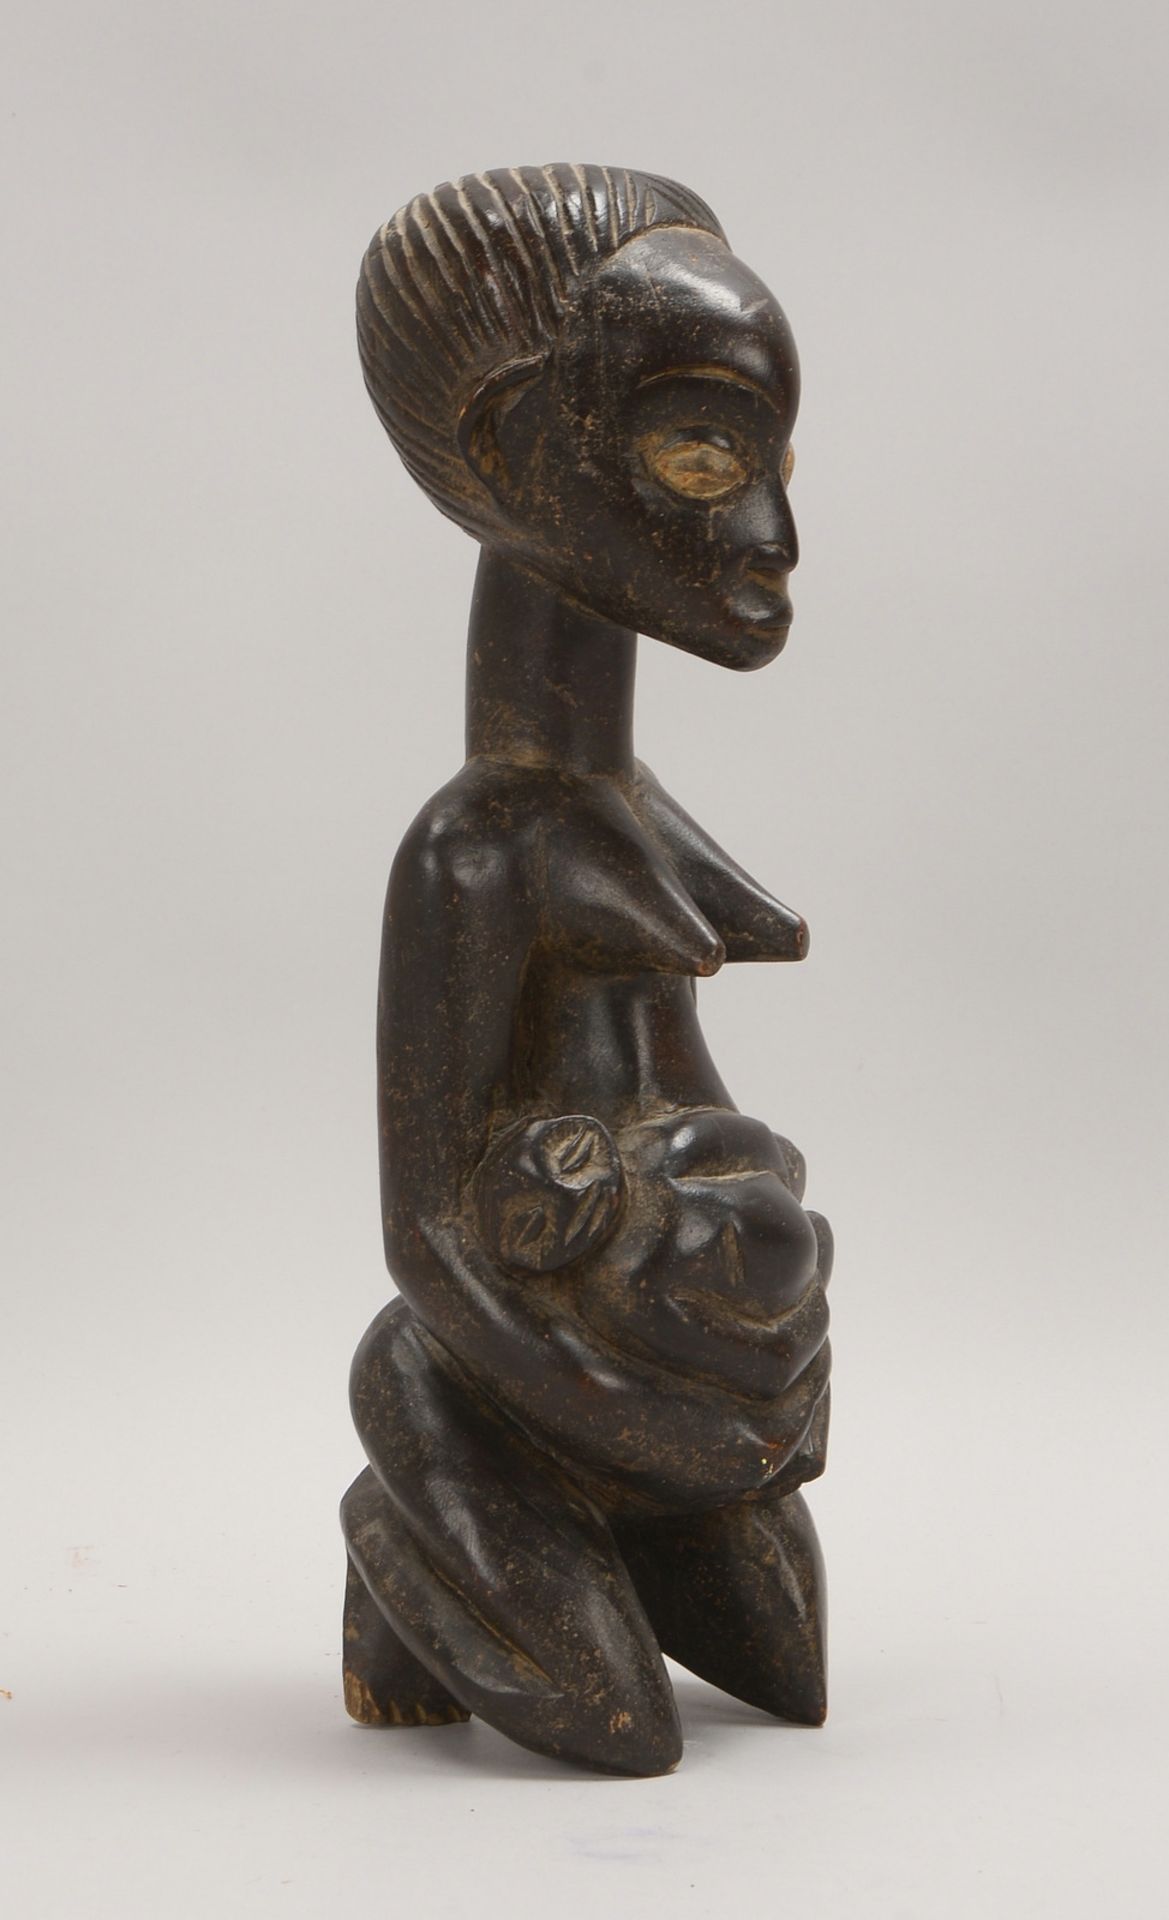 Holzfigur, 'Fruchtbarkeitsfigur' - Darstellung einer Frau mit Kind; Höhe 39 cm